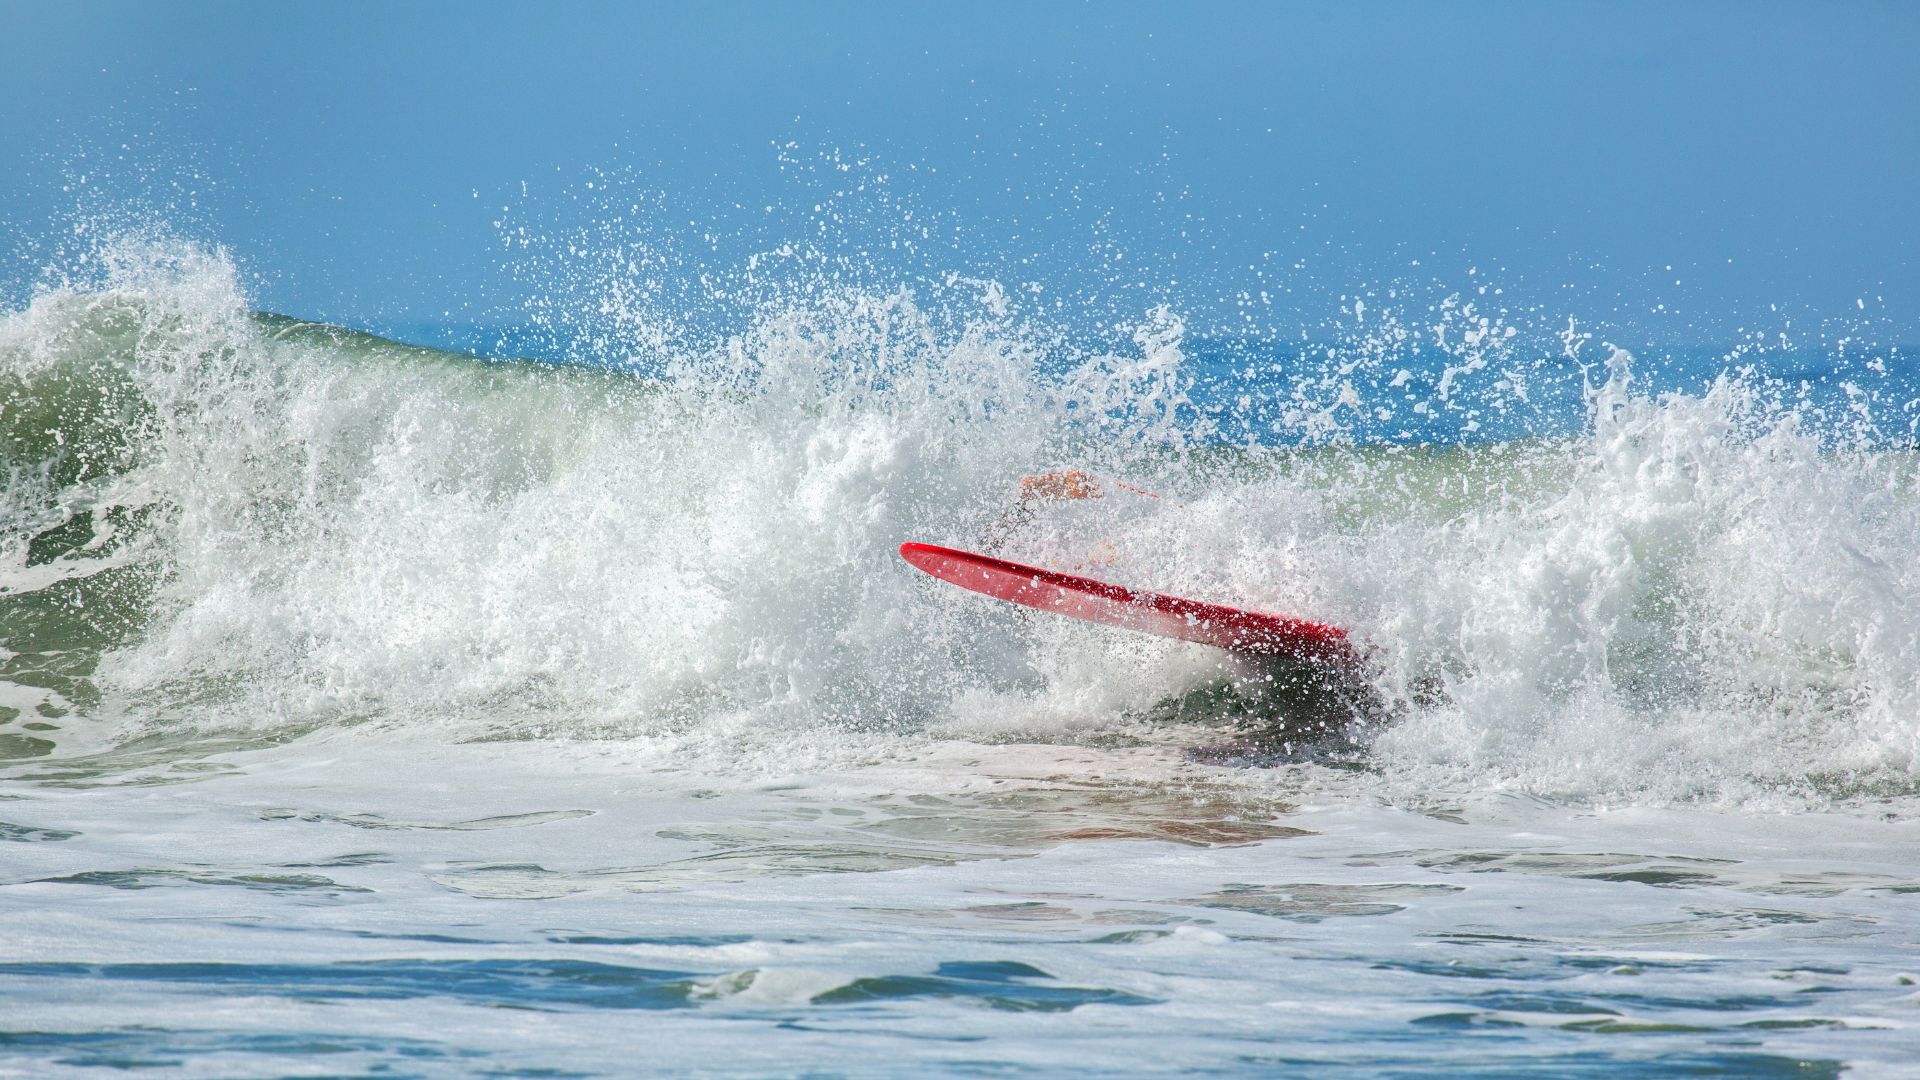 Tomber dans la vague en surf, le wipeout